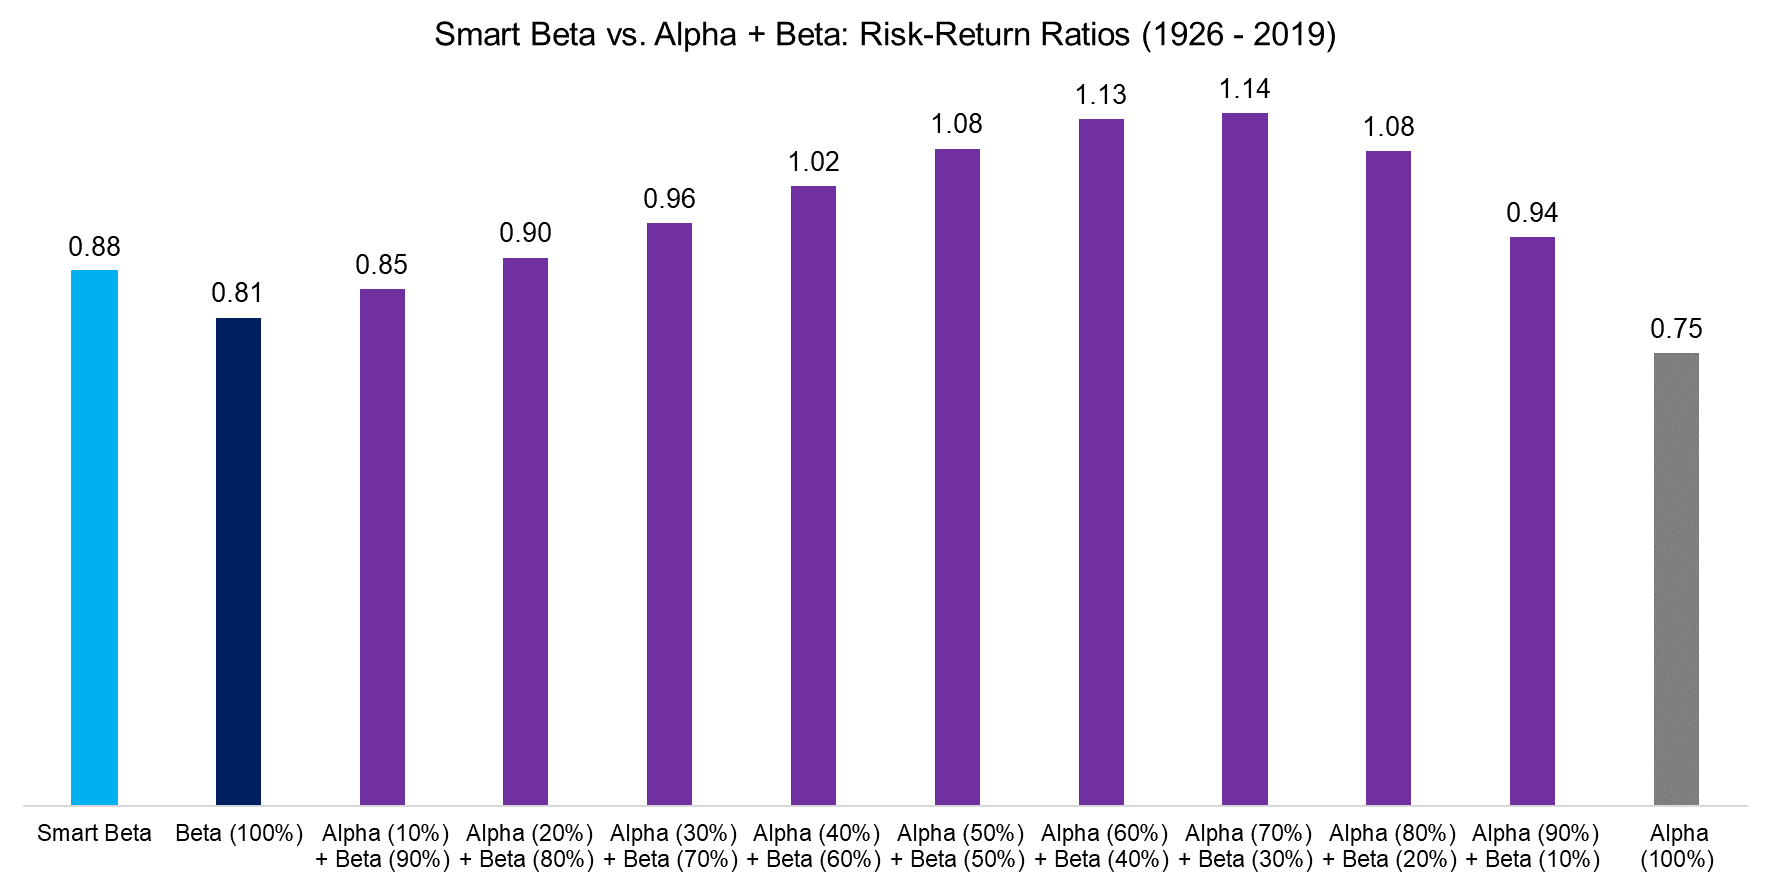 Smart Beta vs. Alpha + Beta Risk-Return Ratios (1926 - 2019)